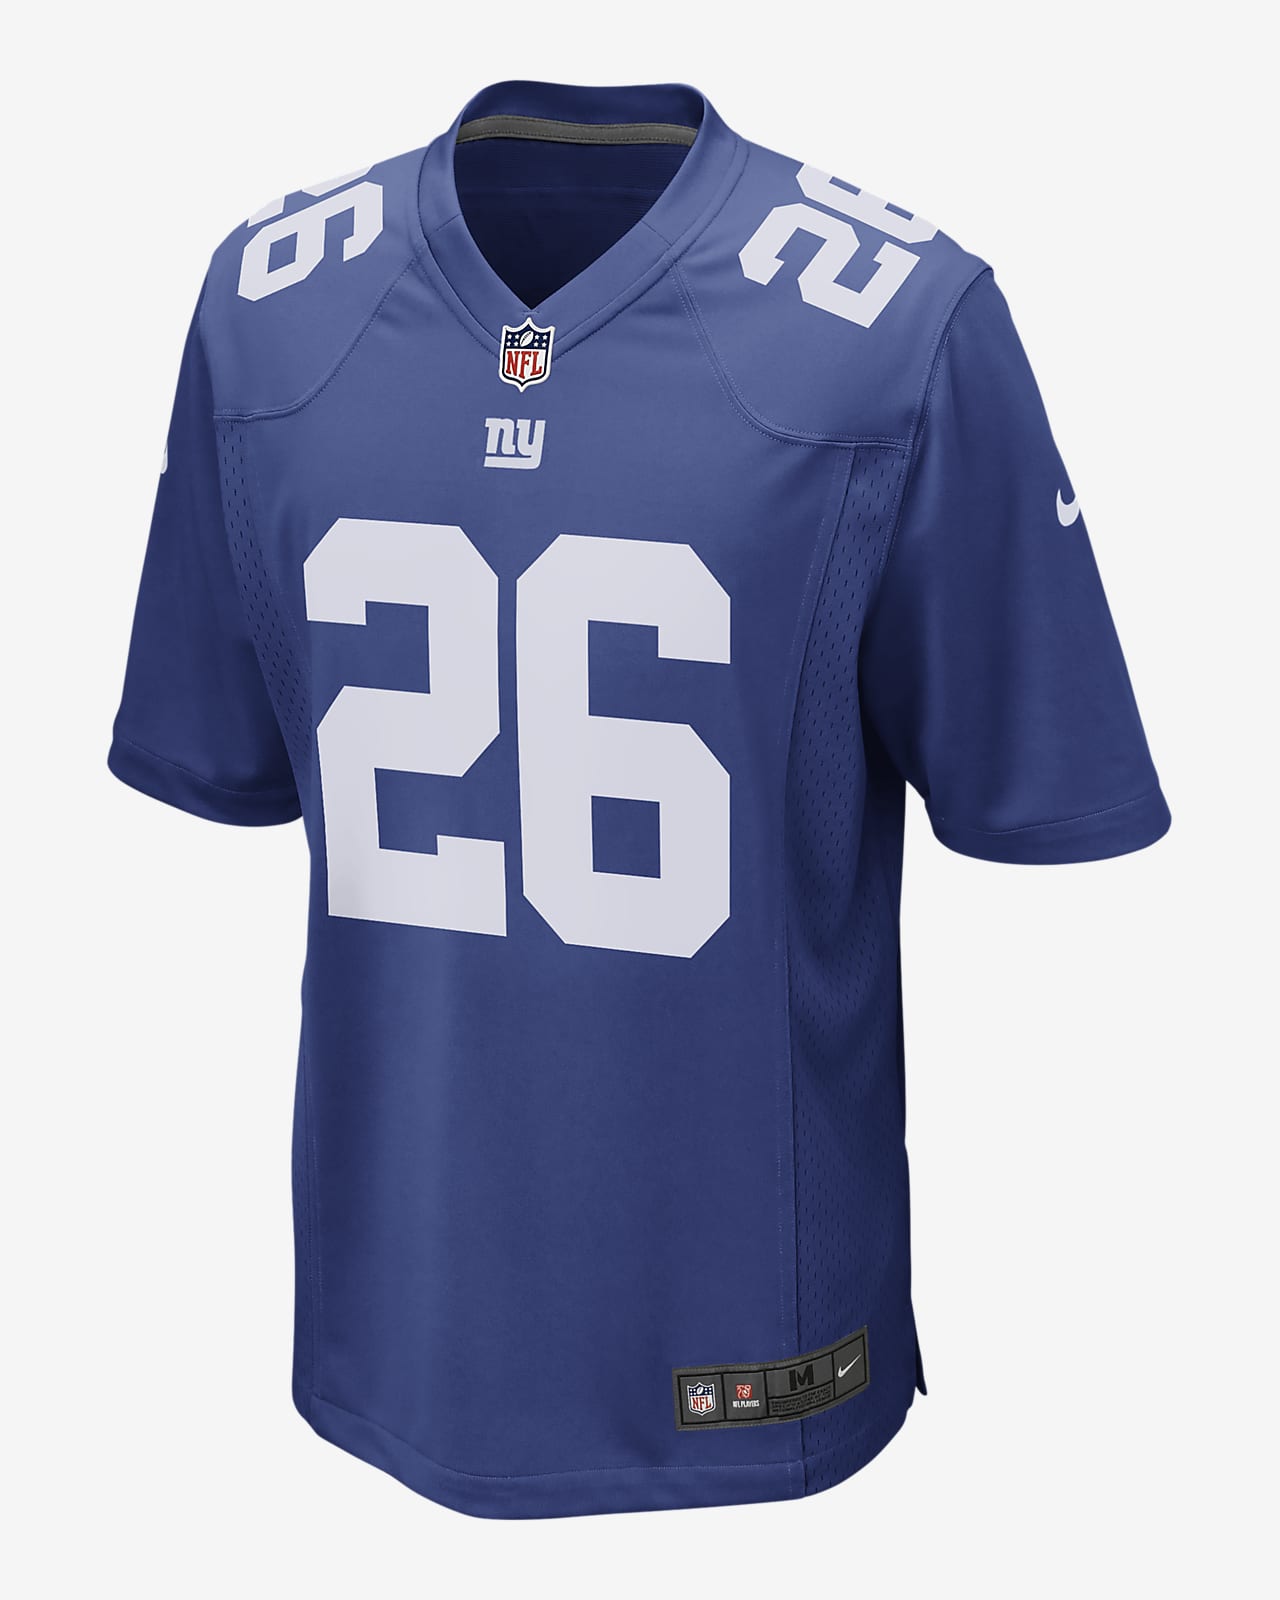 NFL New York Giants-fodboldtrøje til mænd (Saquon Barkley)